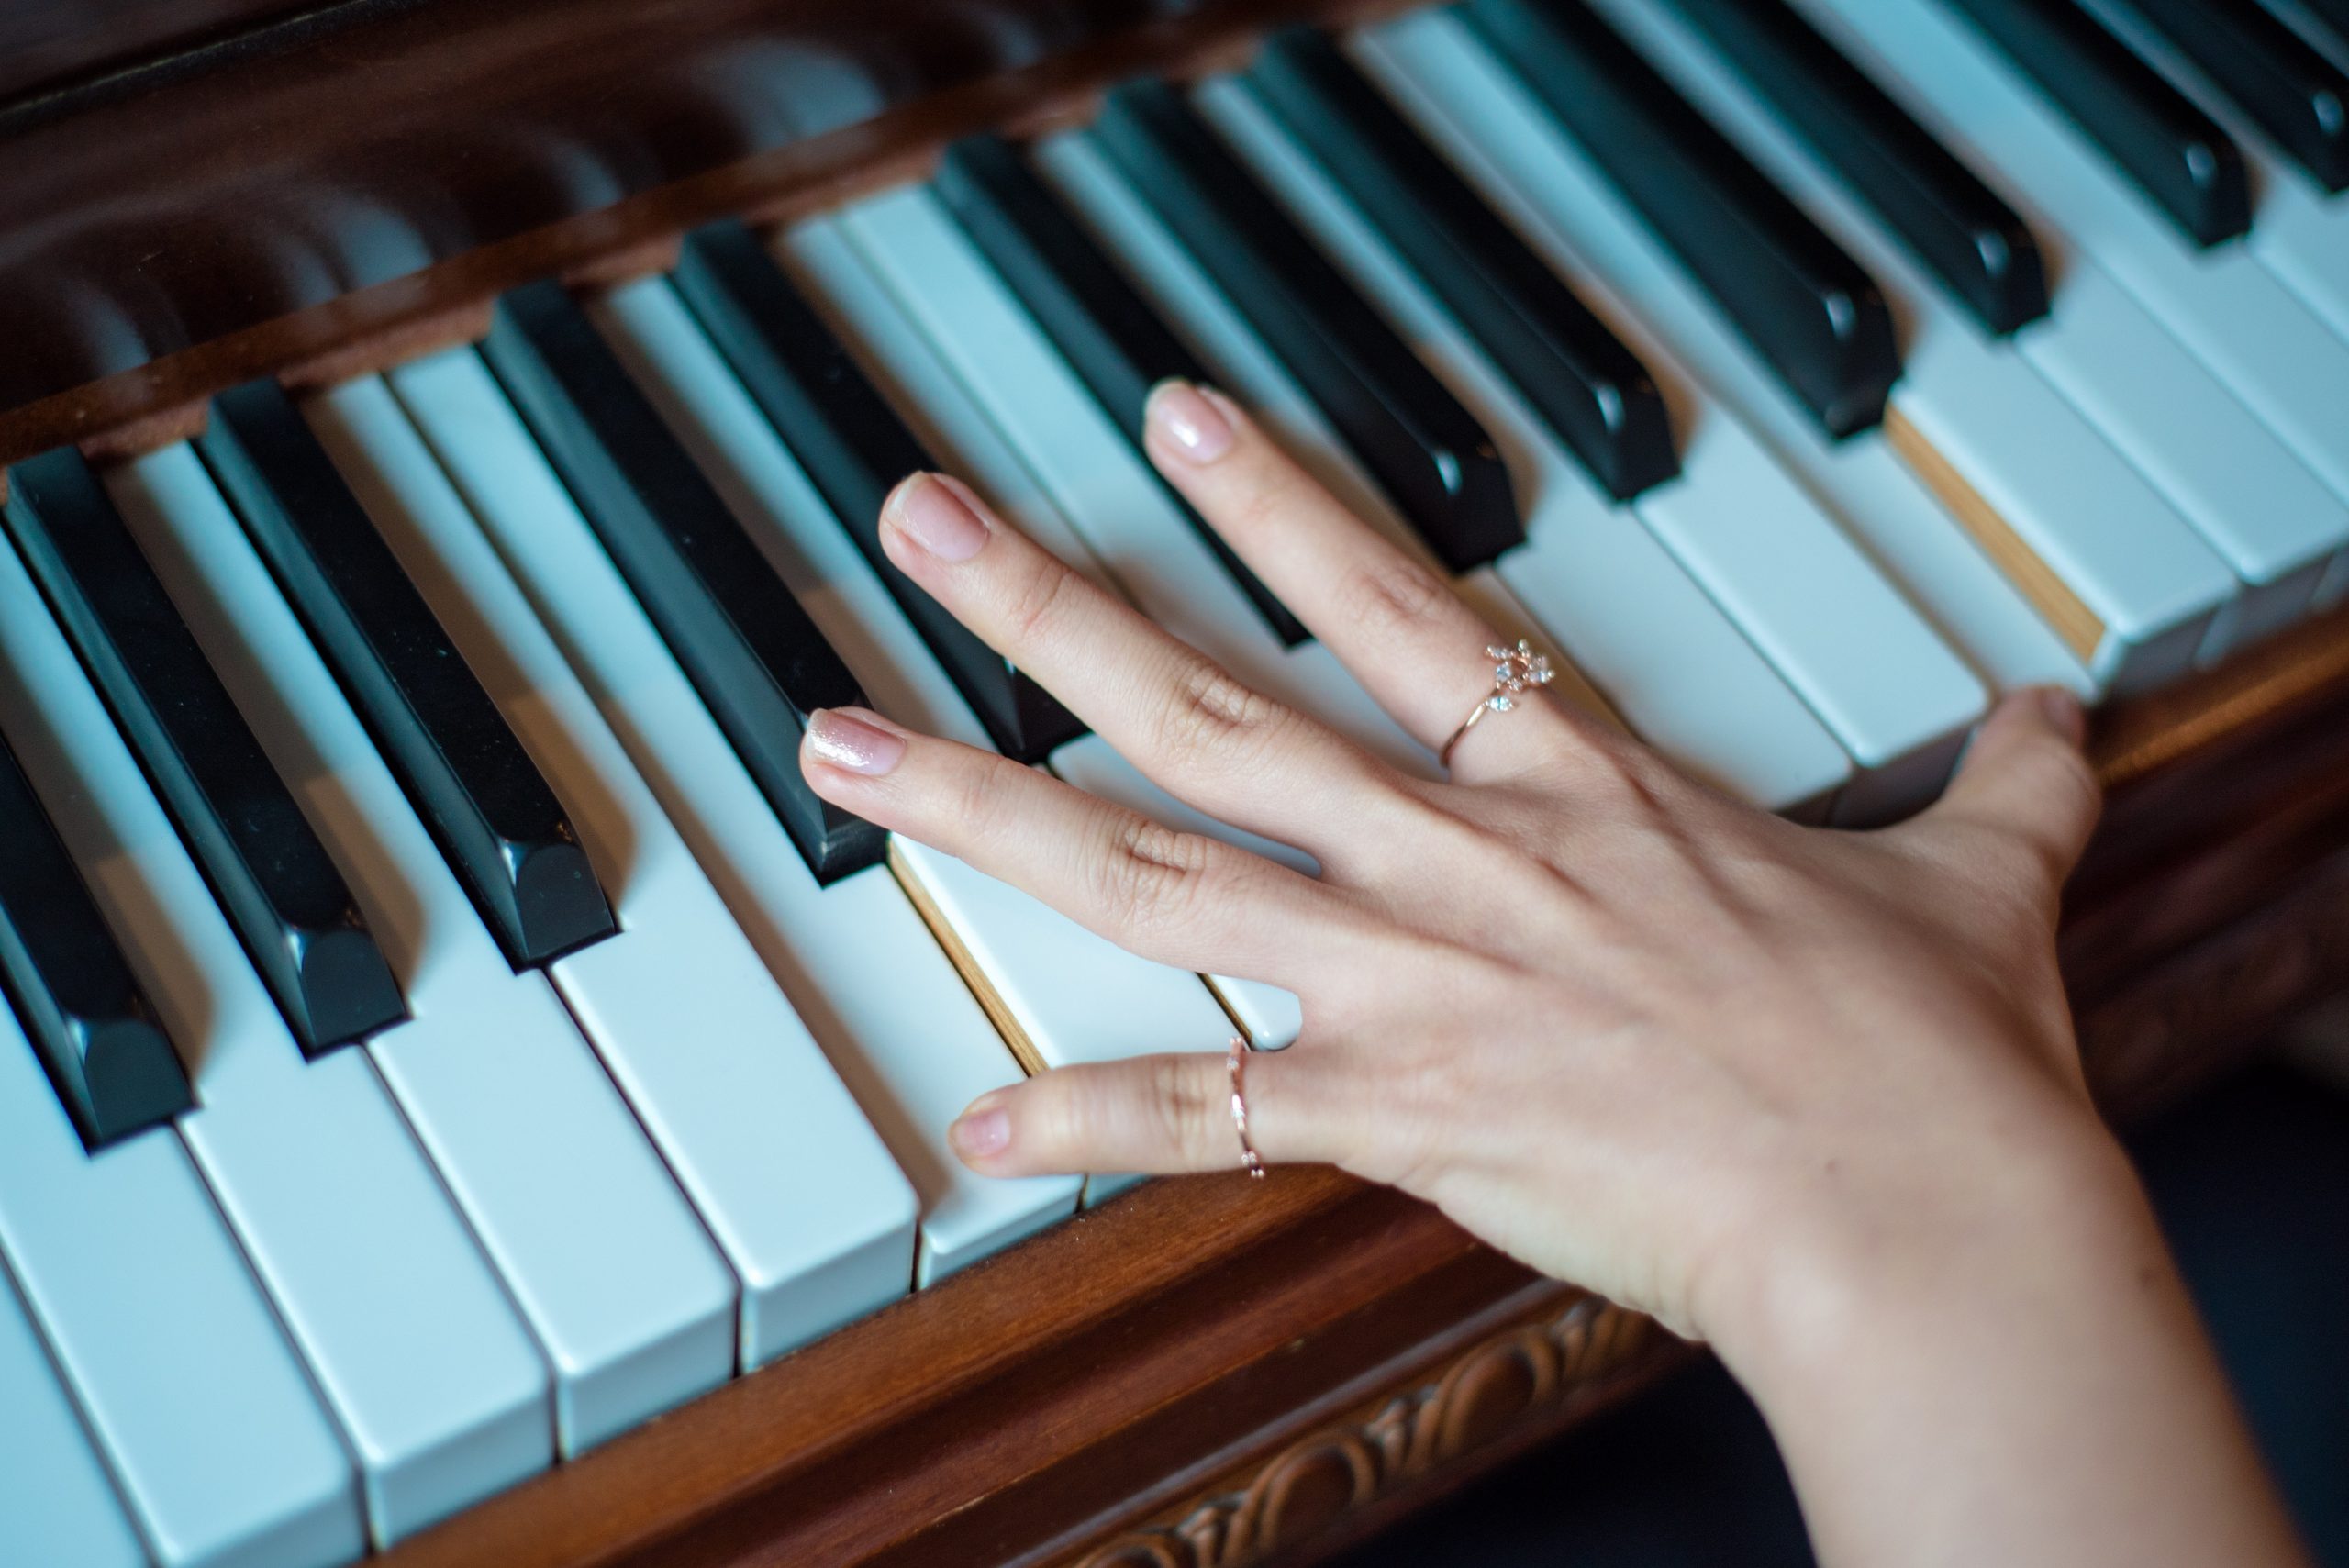 Người mới tập chơi piano thường sẽ gặp phải một vấn đề chung đó là ngón tay quá yếu, bấm một thời gian đã cảm thấy mỏi nhừ. Đôi khi trong quá trình luyện tập, bạn tự nhận thấy rằng âm thanh khi đàn giữa các ngón có lúc to, nhỏ không rõ ràng. Nguyên nhân chính đến từ việc lực tay được phân bổ  không đều. Đây gần như là vấn đề chung của mọi người khi mới tập đàn, việc cảm giác lực giữa các ngón tay không đều khi chơi đàn, cụ thể với những ngón bên ngoài cùng, thường là ngón út & ngón áp út sẽ có lực yếu hơn hẳn so với những ngón còn lại. Dưới đây, LED Piano sẽ hướng dẫn cải thiện lực tay cho người mới tập chơi piano vô cùng hiệu quả nhé!